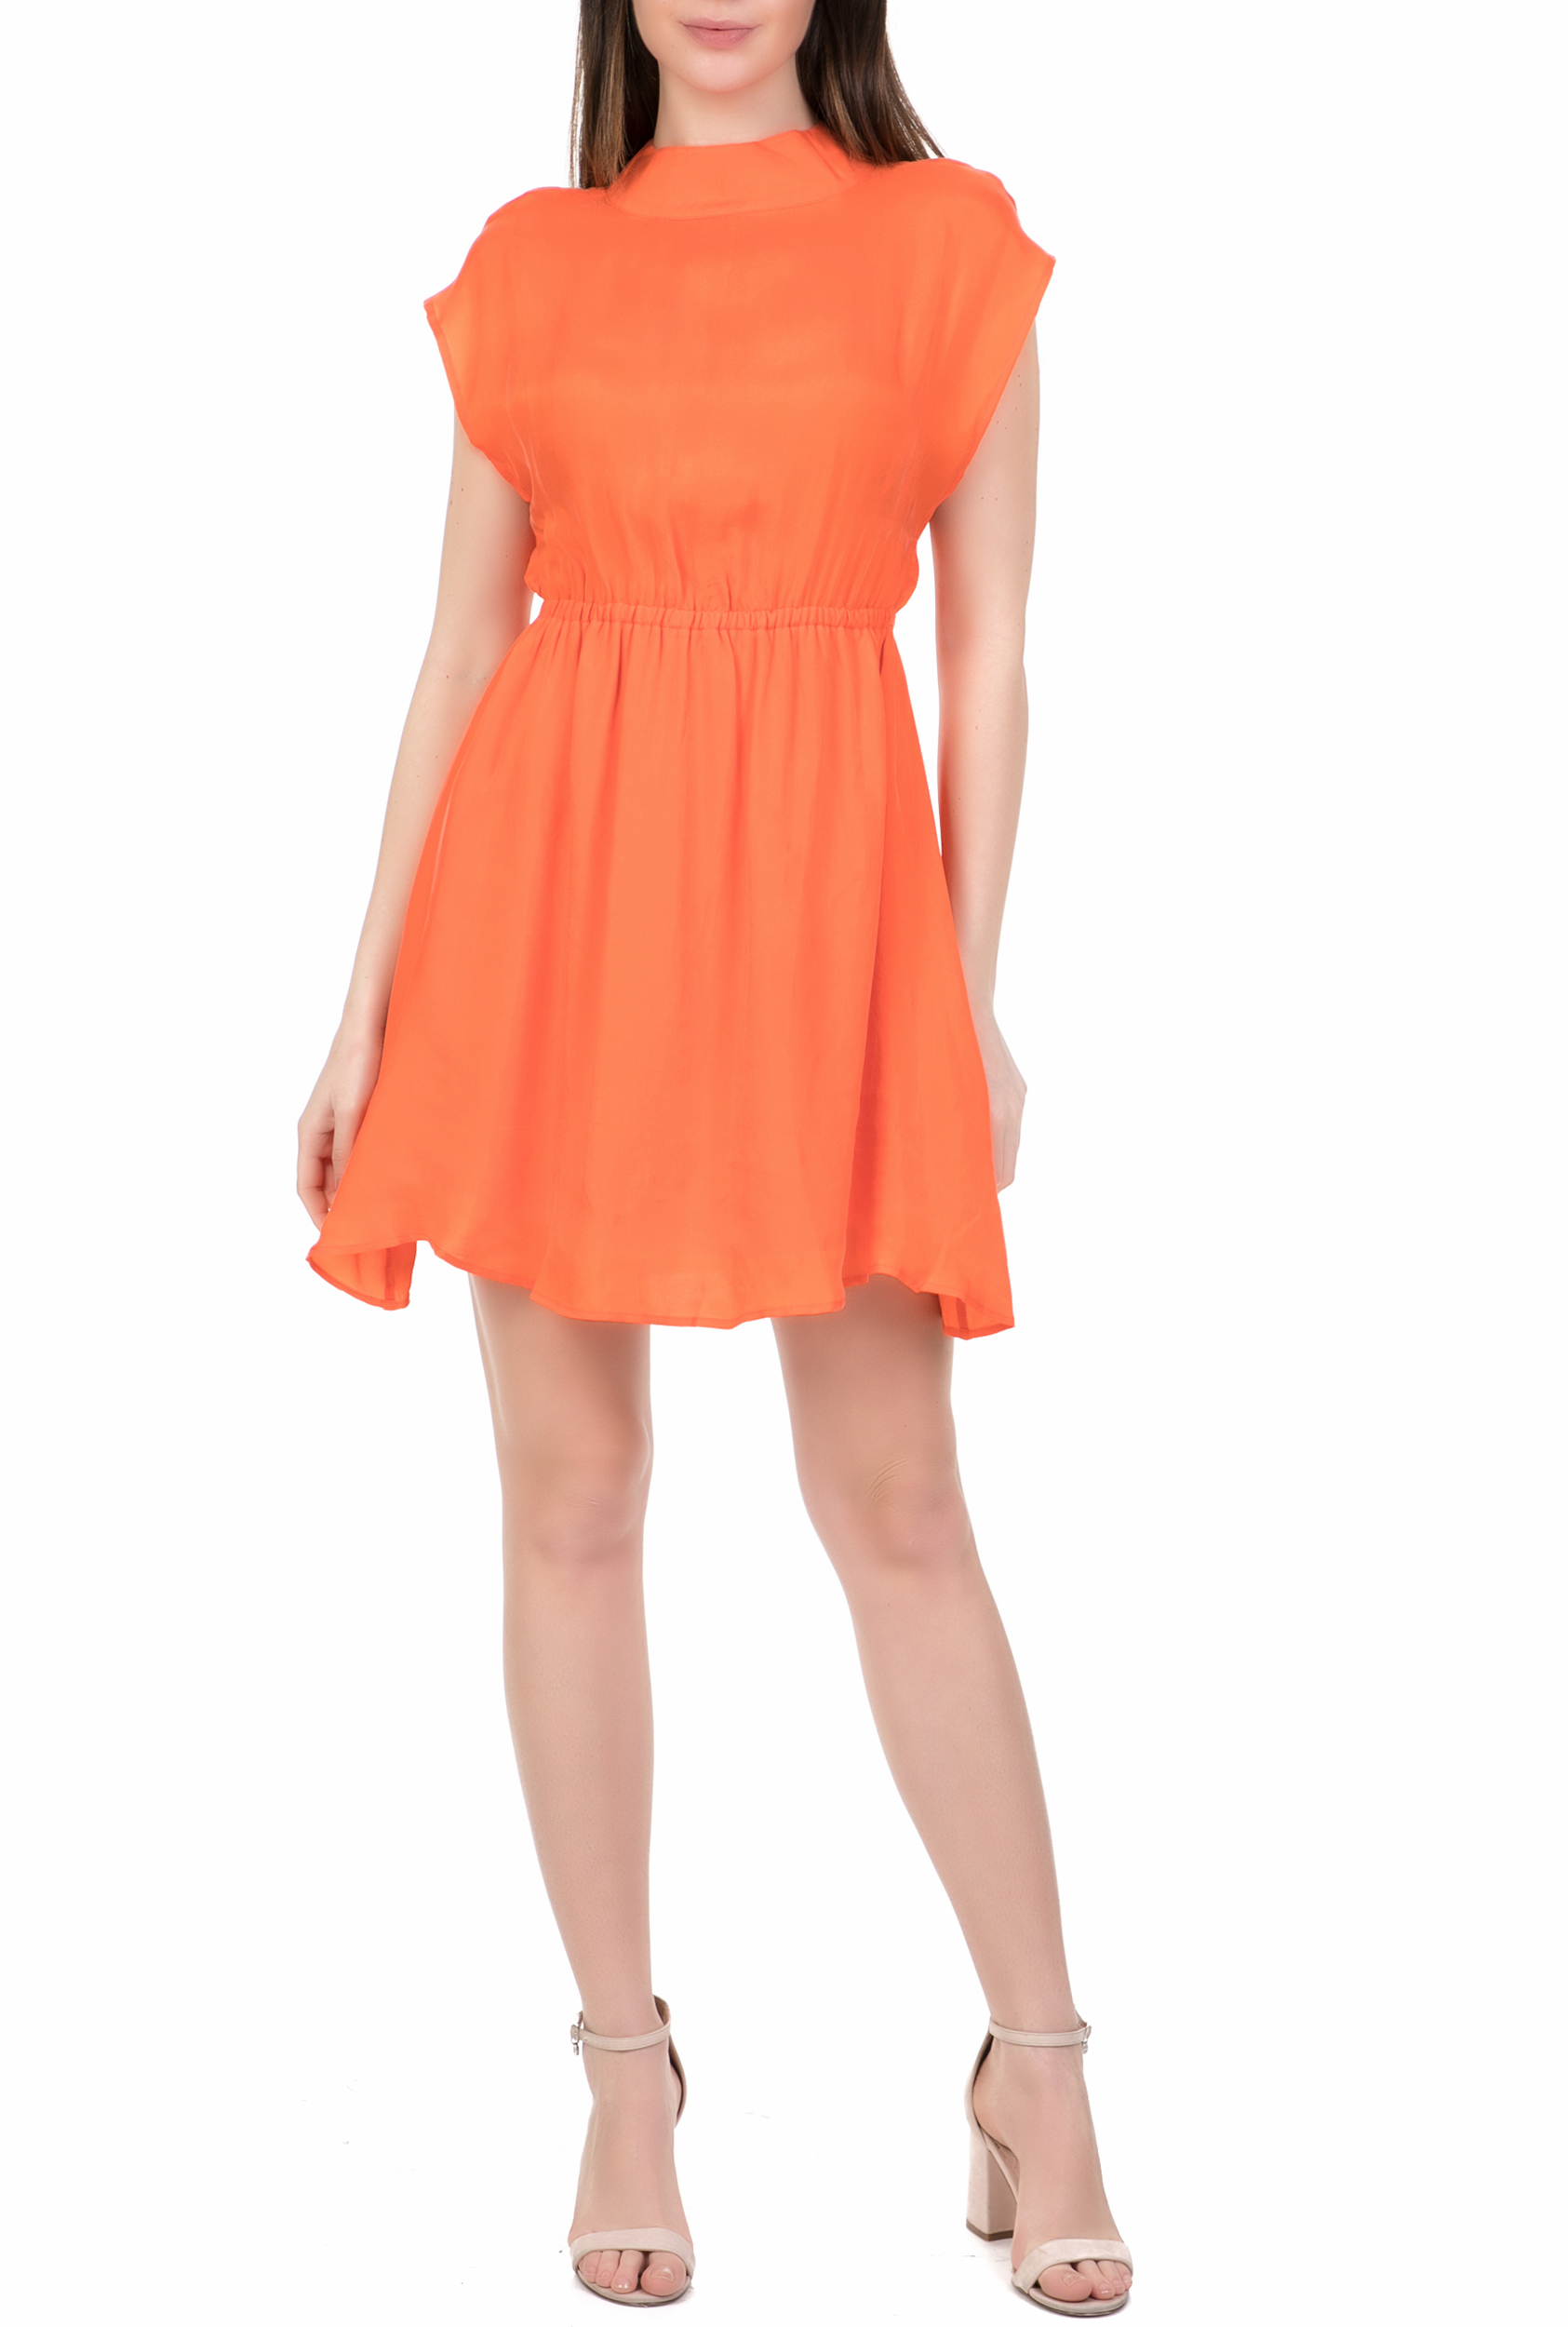 Γυναικεία/Ρούχα/Φορέματα/Μίνι AMERICAN VINTAGE - Γυναικείο μίνι φόρεμα AMERICAN VINTAGE πορτοκαλί